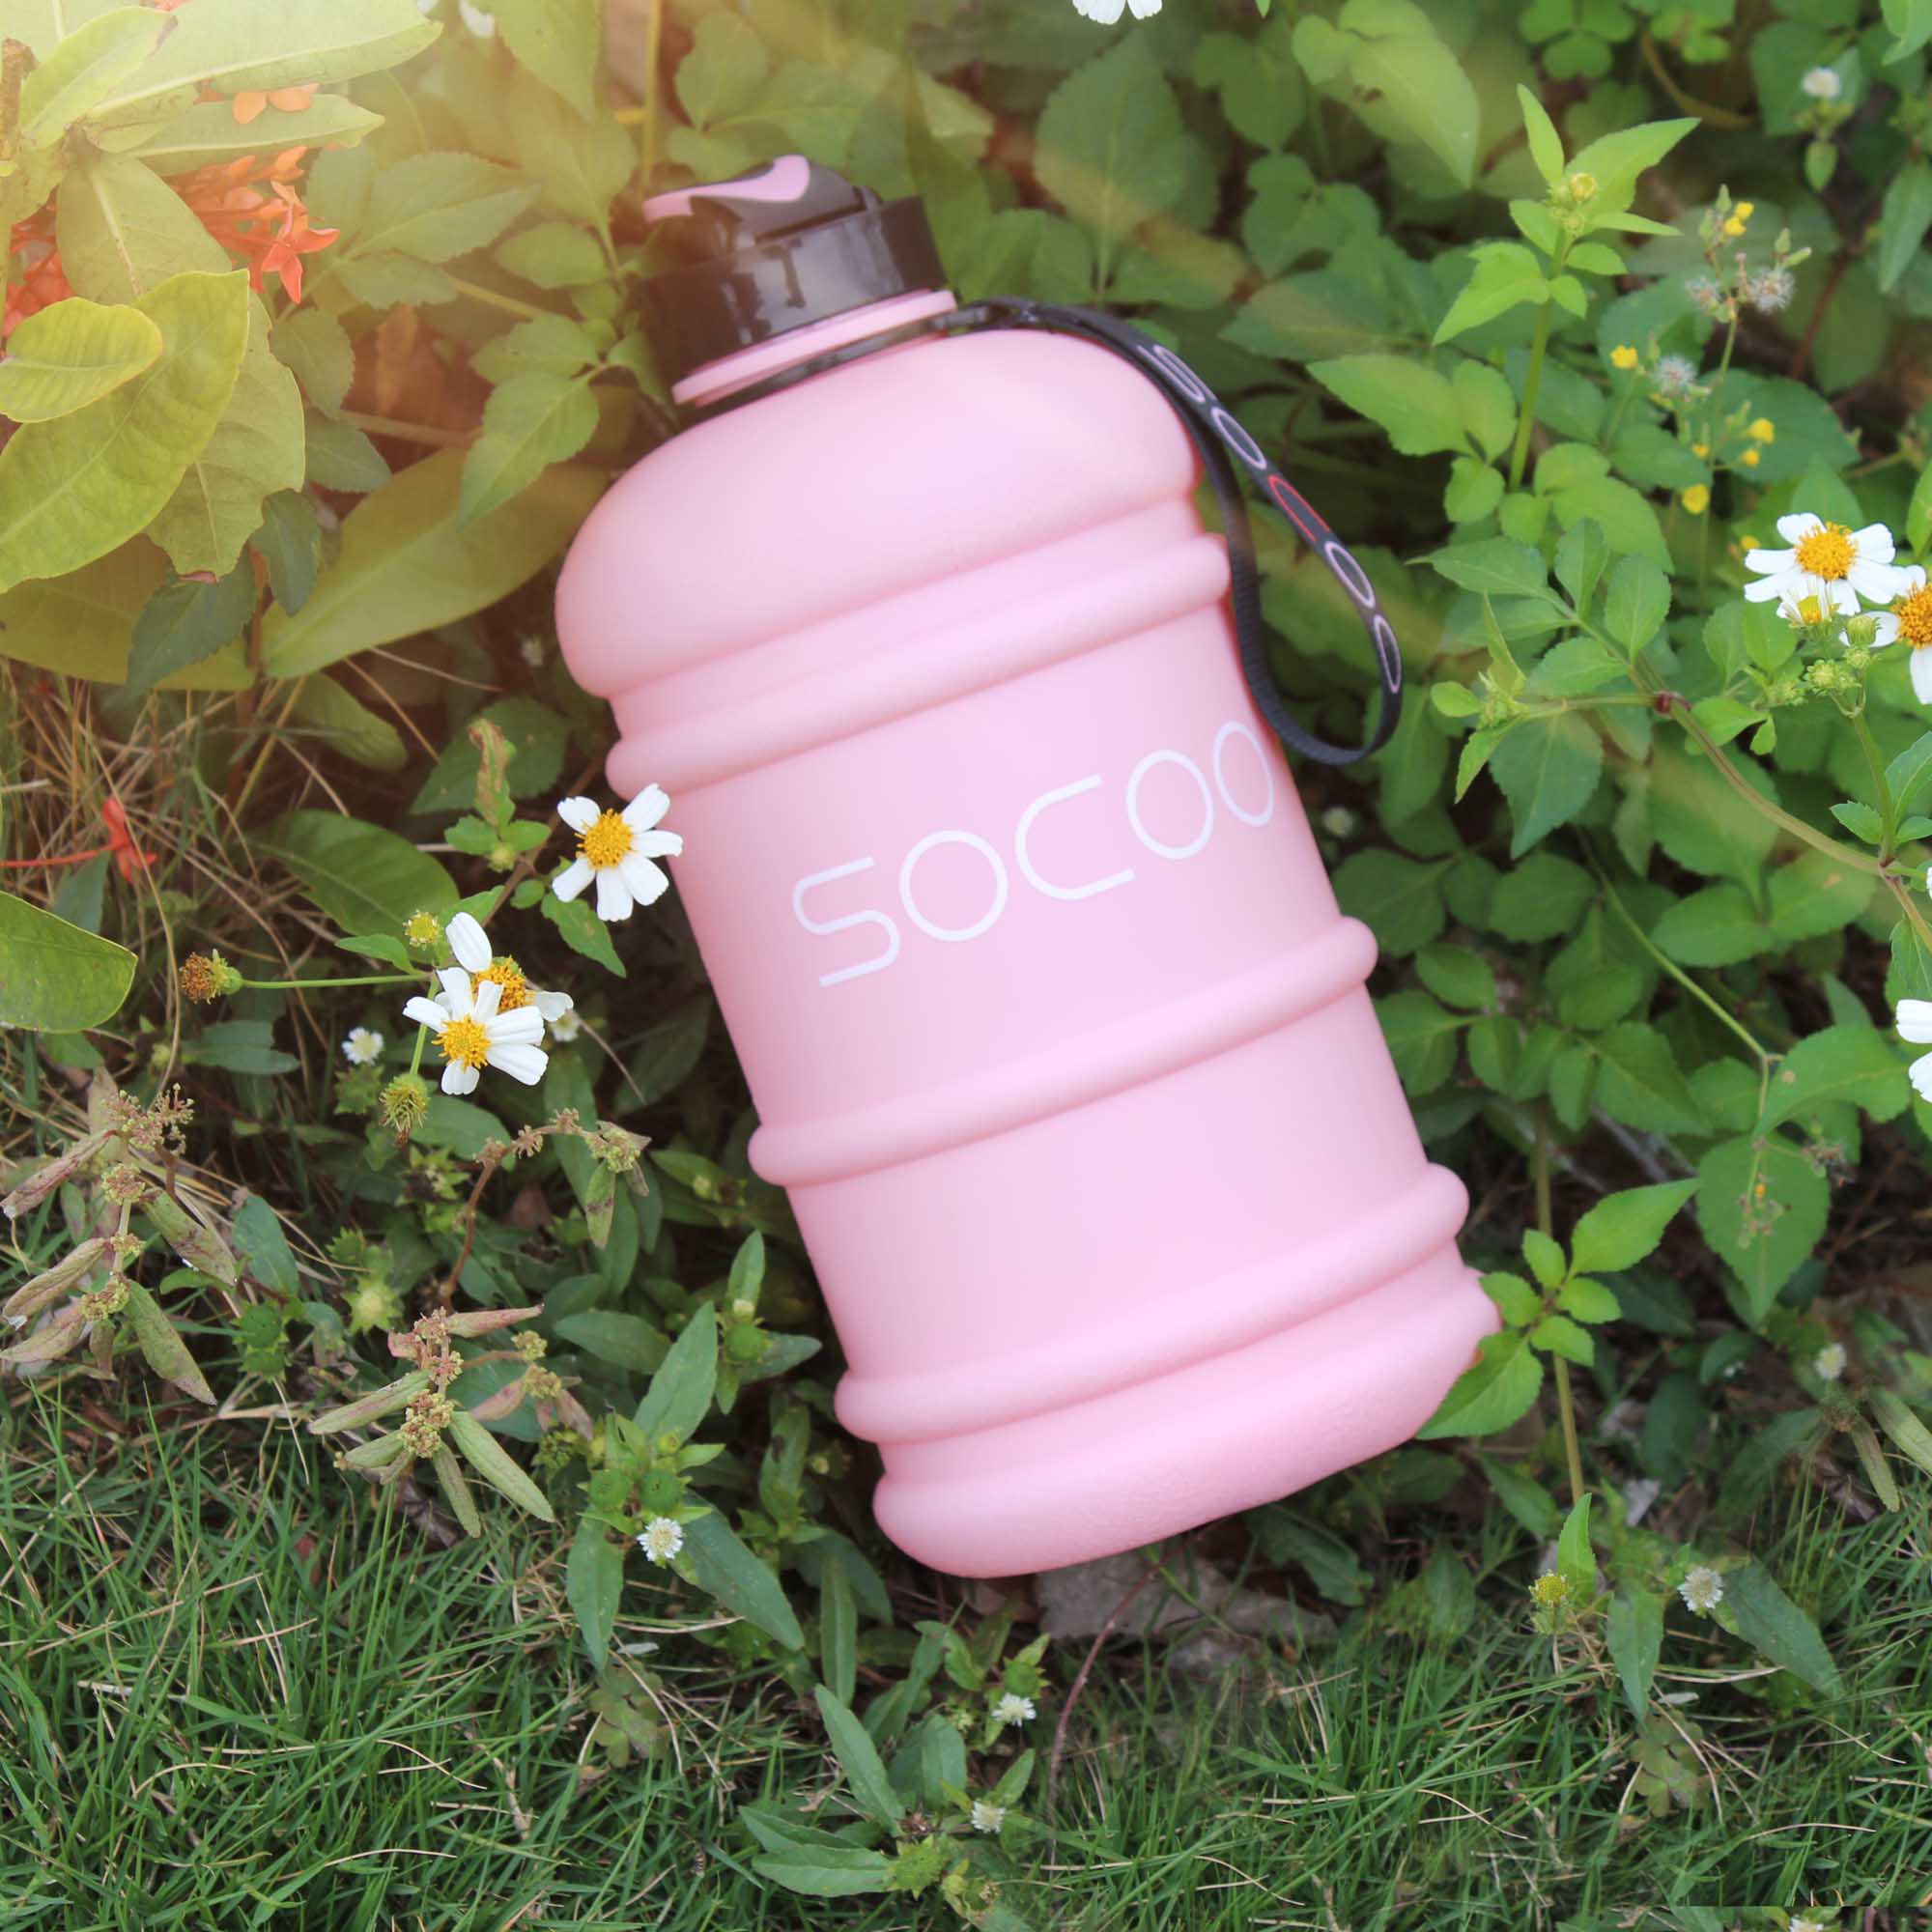 https://www.socoobottle.com/wp-content/uploads/2018/09/sports-water-bottle-pink.jpg